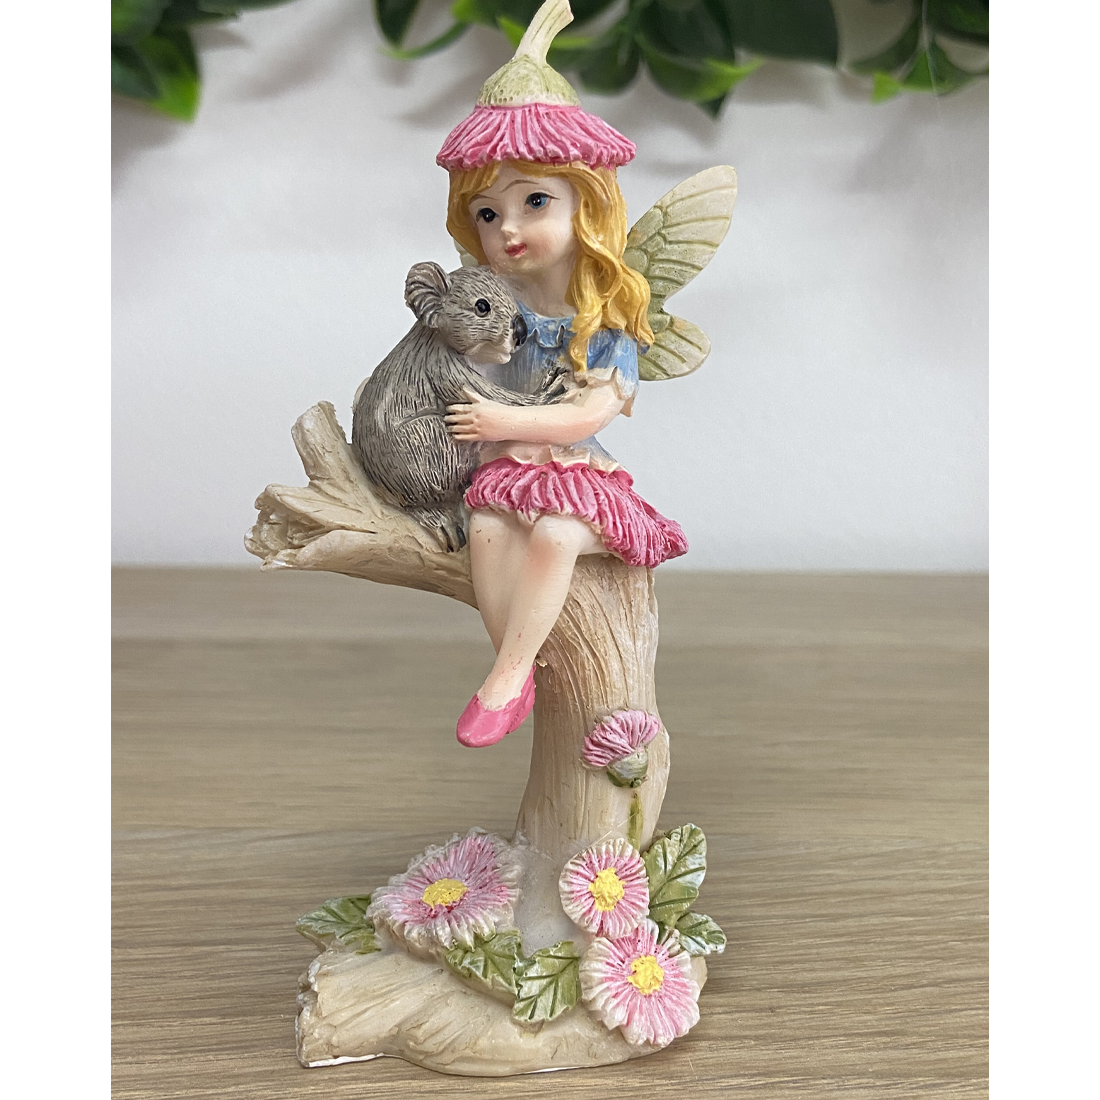 Gum Blossom Fairy with Koala Figurine